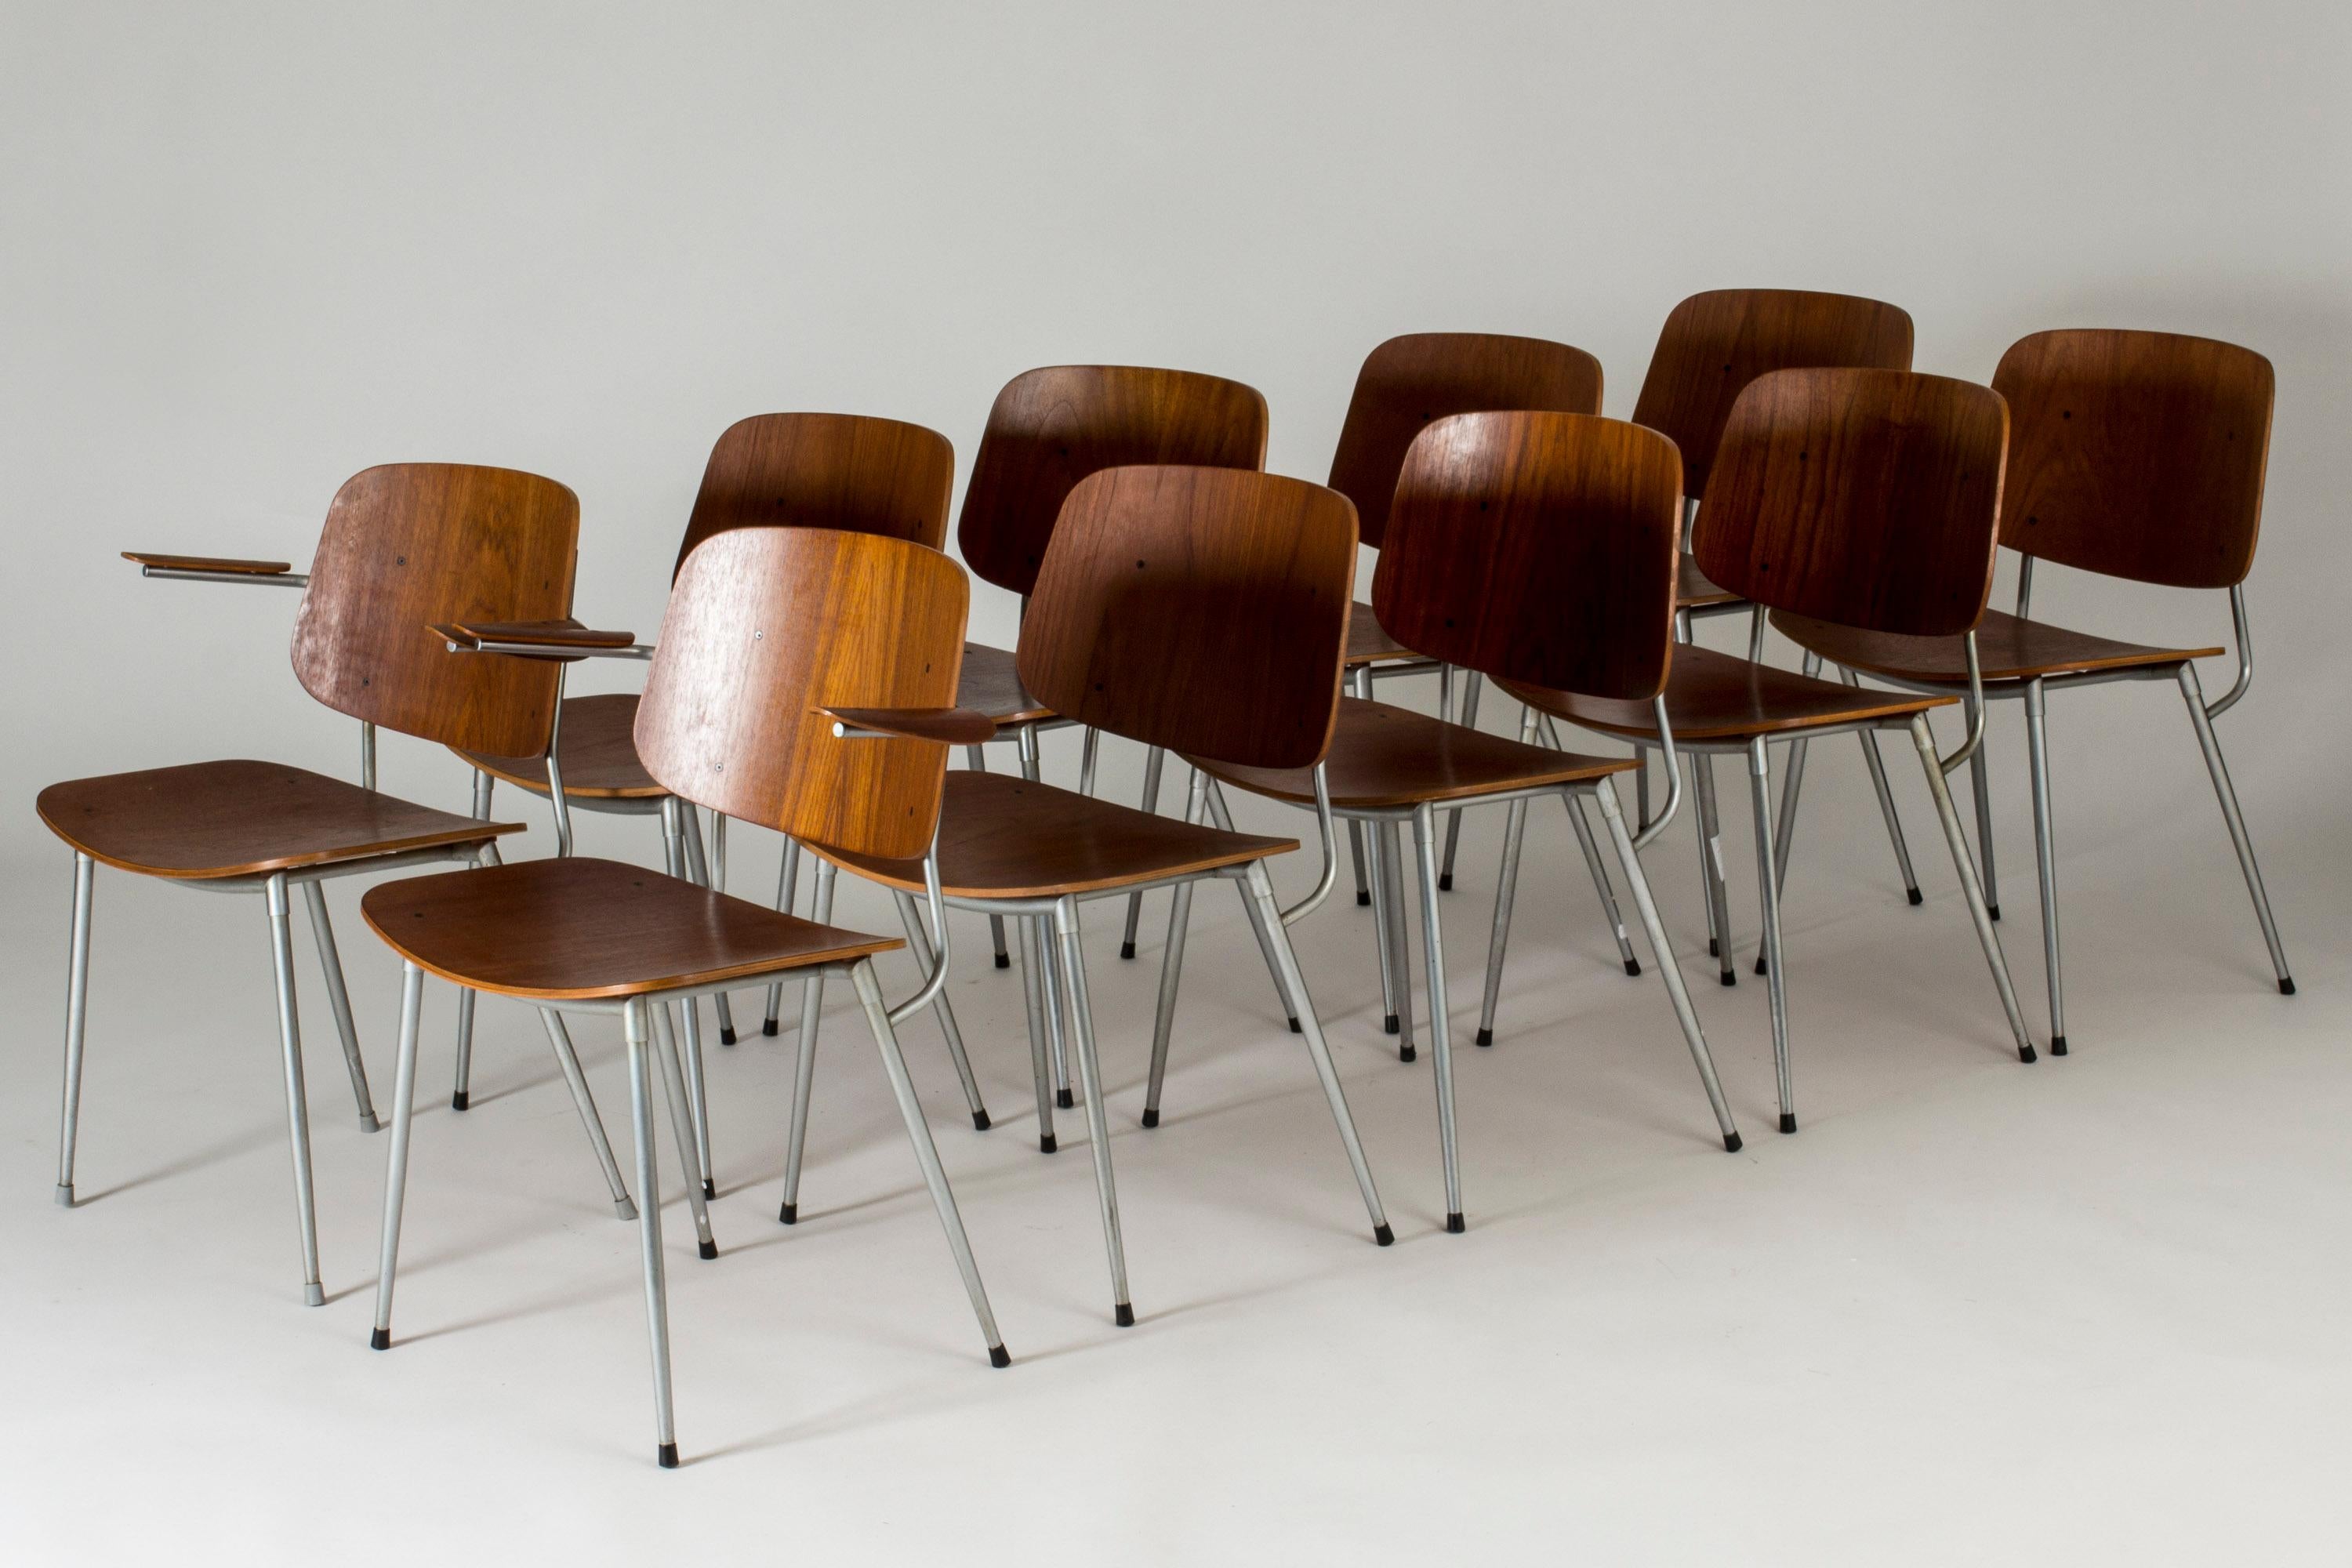 Ensemble de dix chaises de salle à manger en teck de Børge Mogensen, modèle 155, dans une édition rare avec des pieds en acier. Expression élégante et légère. Deux des chaises ont des accoudoirs en teck joliment incurvés.